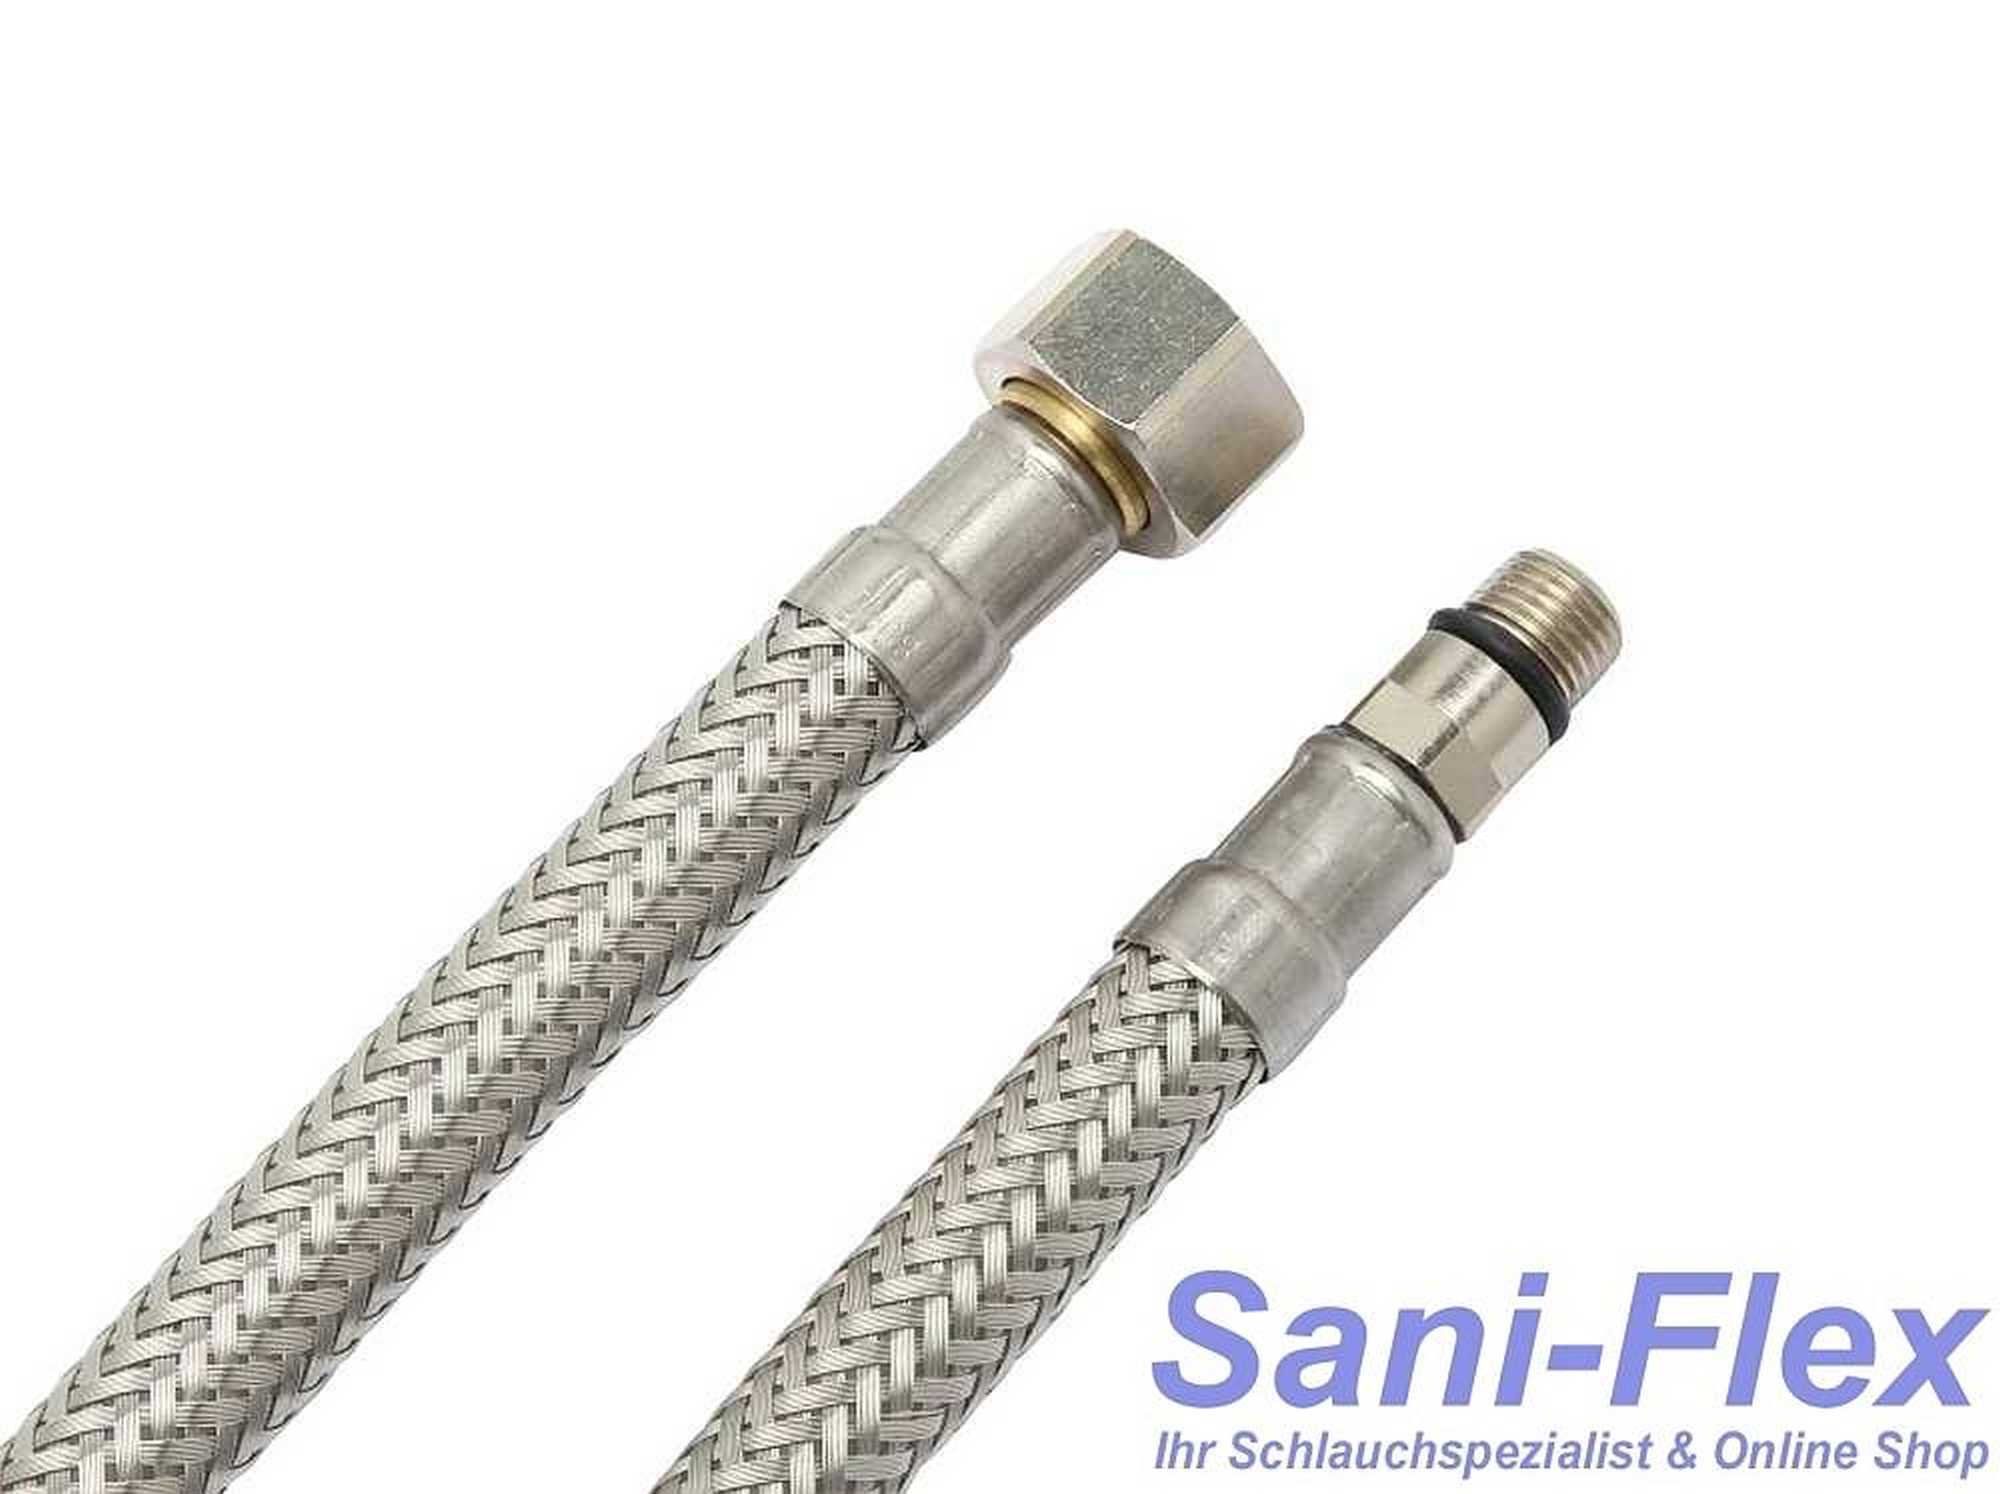 Sani-Flexschlauch DN6 mit M8x1 AG kurz und 3/8" Überwurfmutter als Armaturenanschluss Schlauch